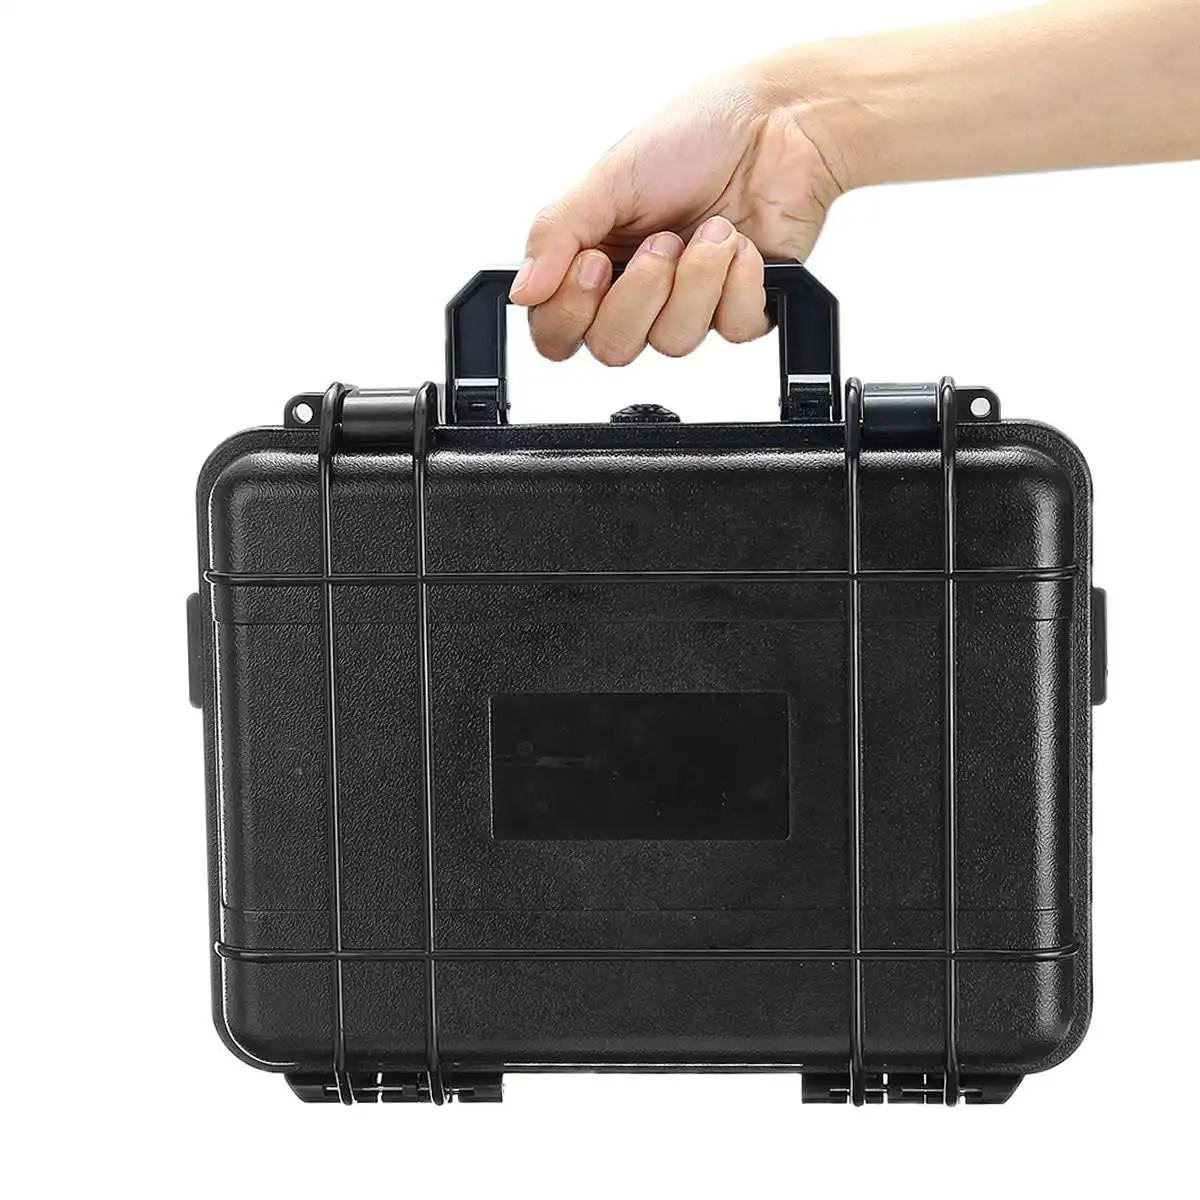 Защитный ящик для инструментов безопасности водонепроницаемый противоударный ящик для инструментов герметичный чехол для инструментов ударопрочный чемодан с губкой